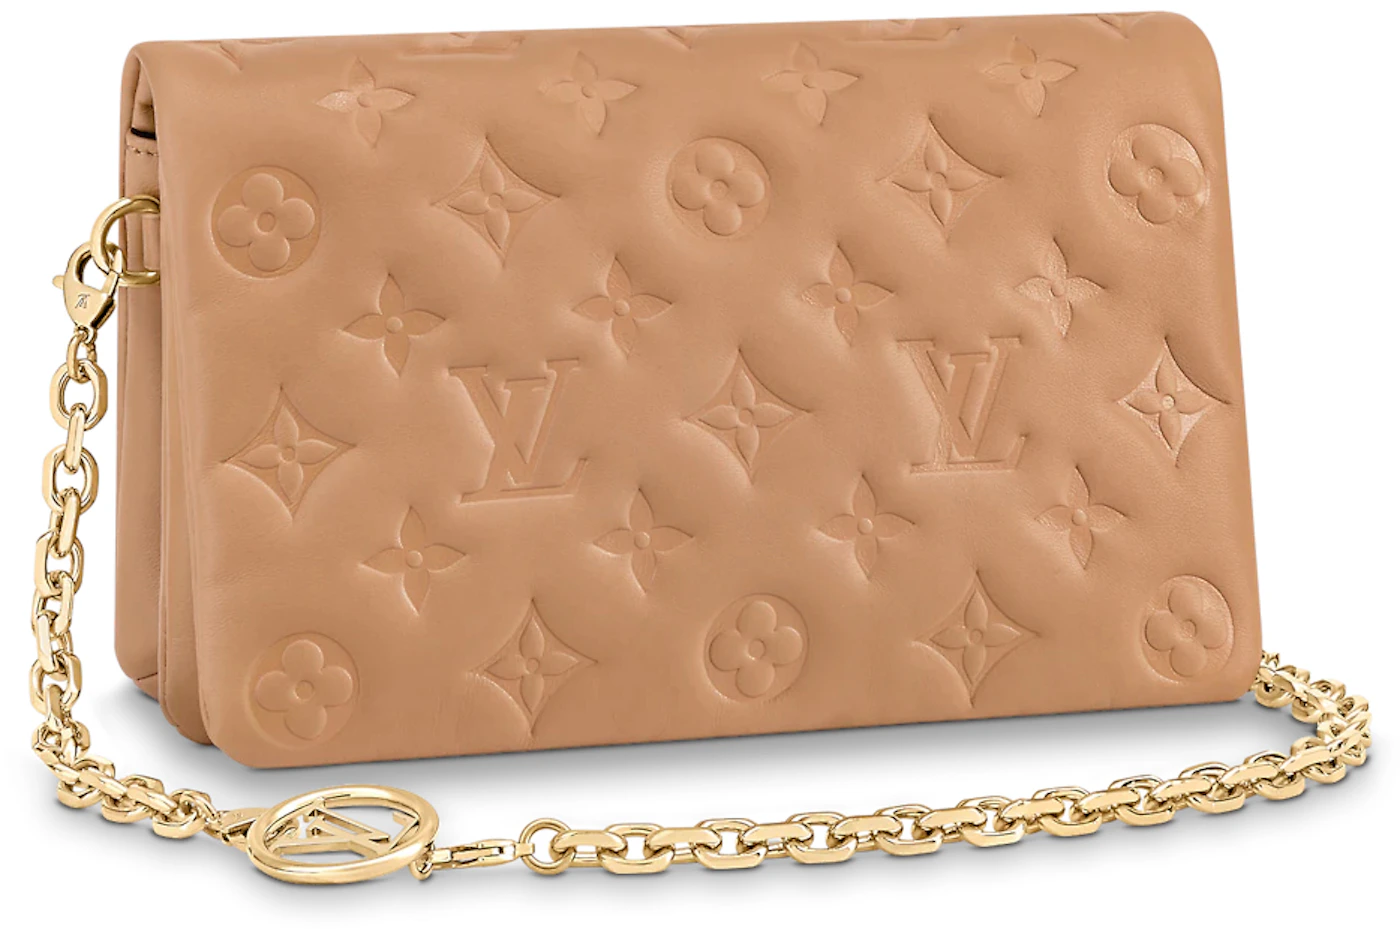 Large Vintage Louis Vuitton Camel-colored Leather Wallet 